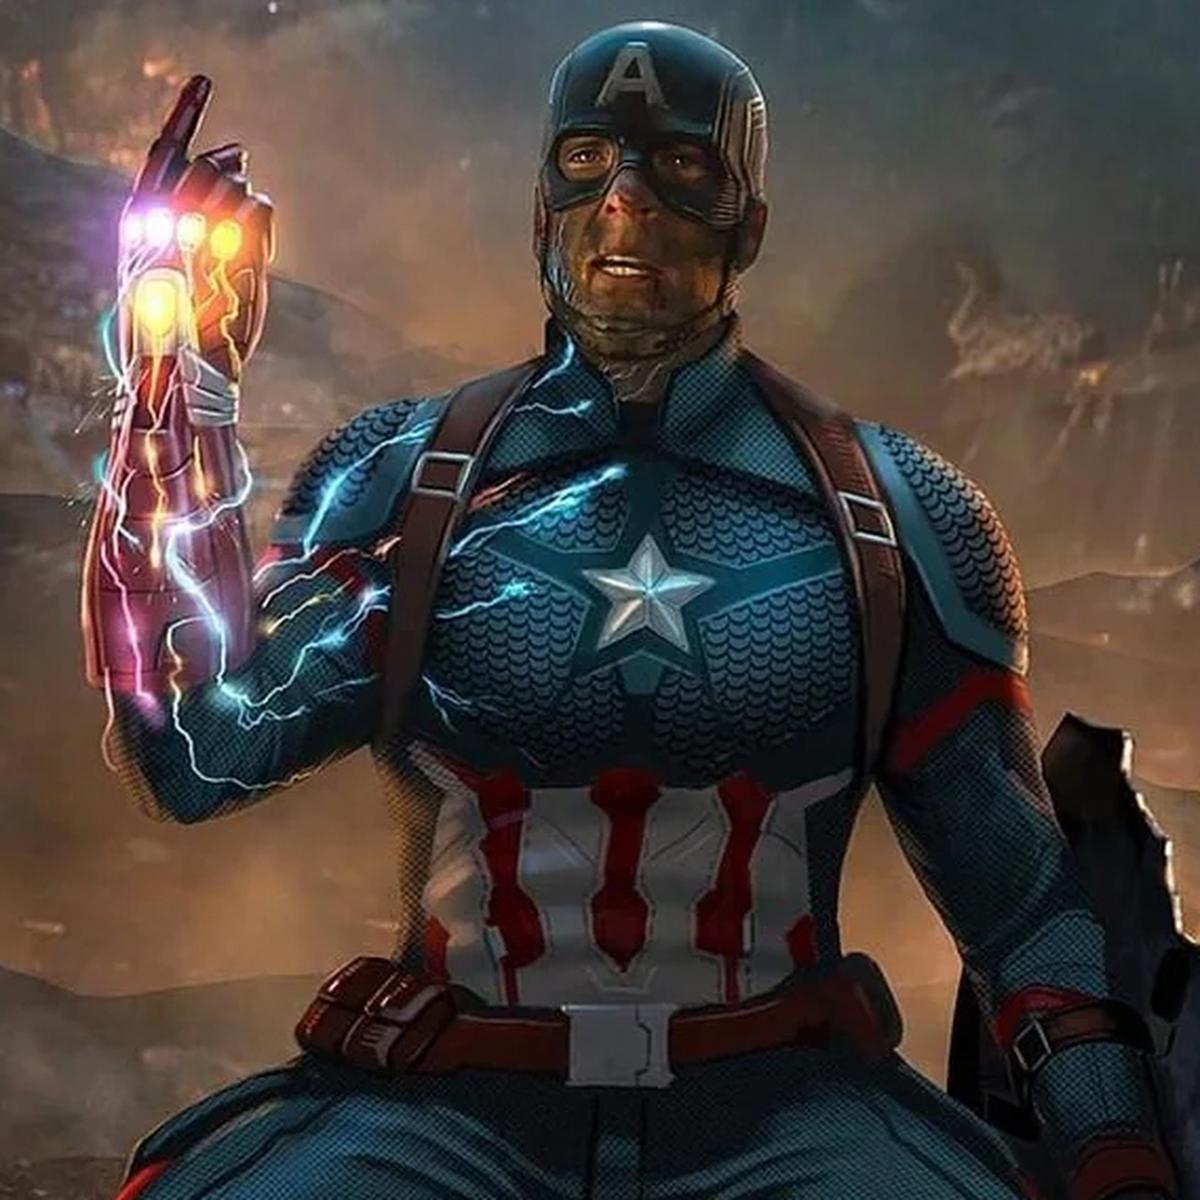 Nunca imaginé que el Capitán América de Marvel fuese un personaje